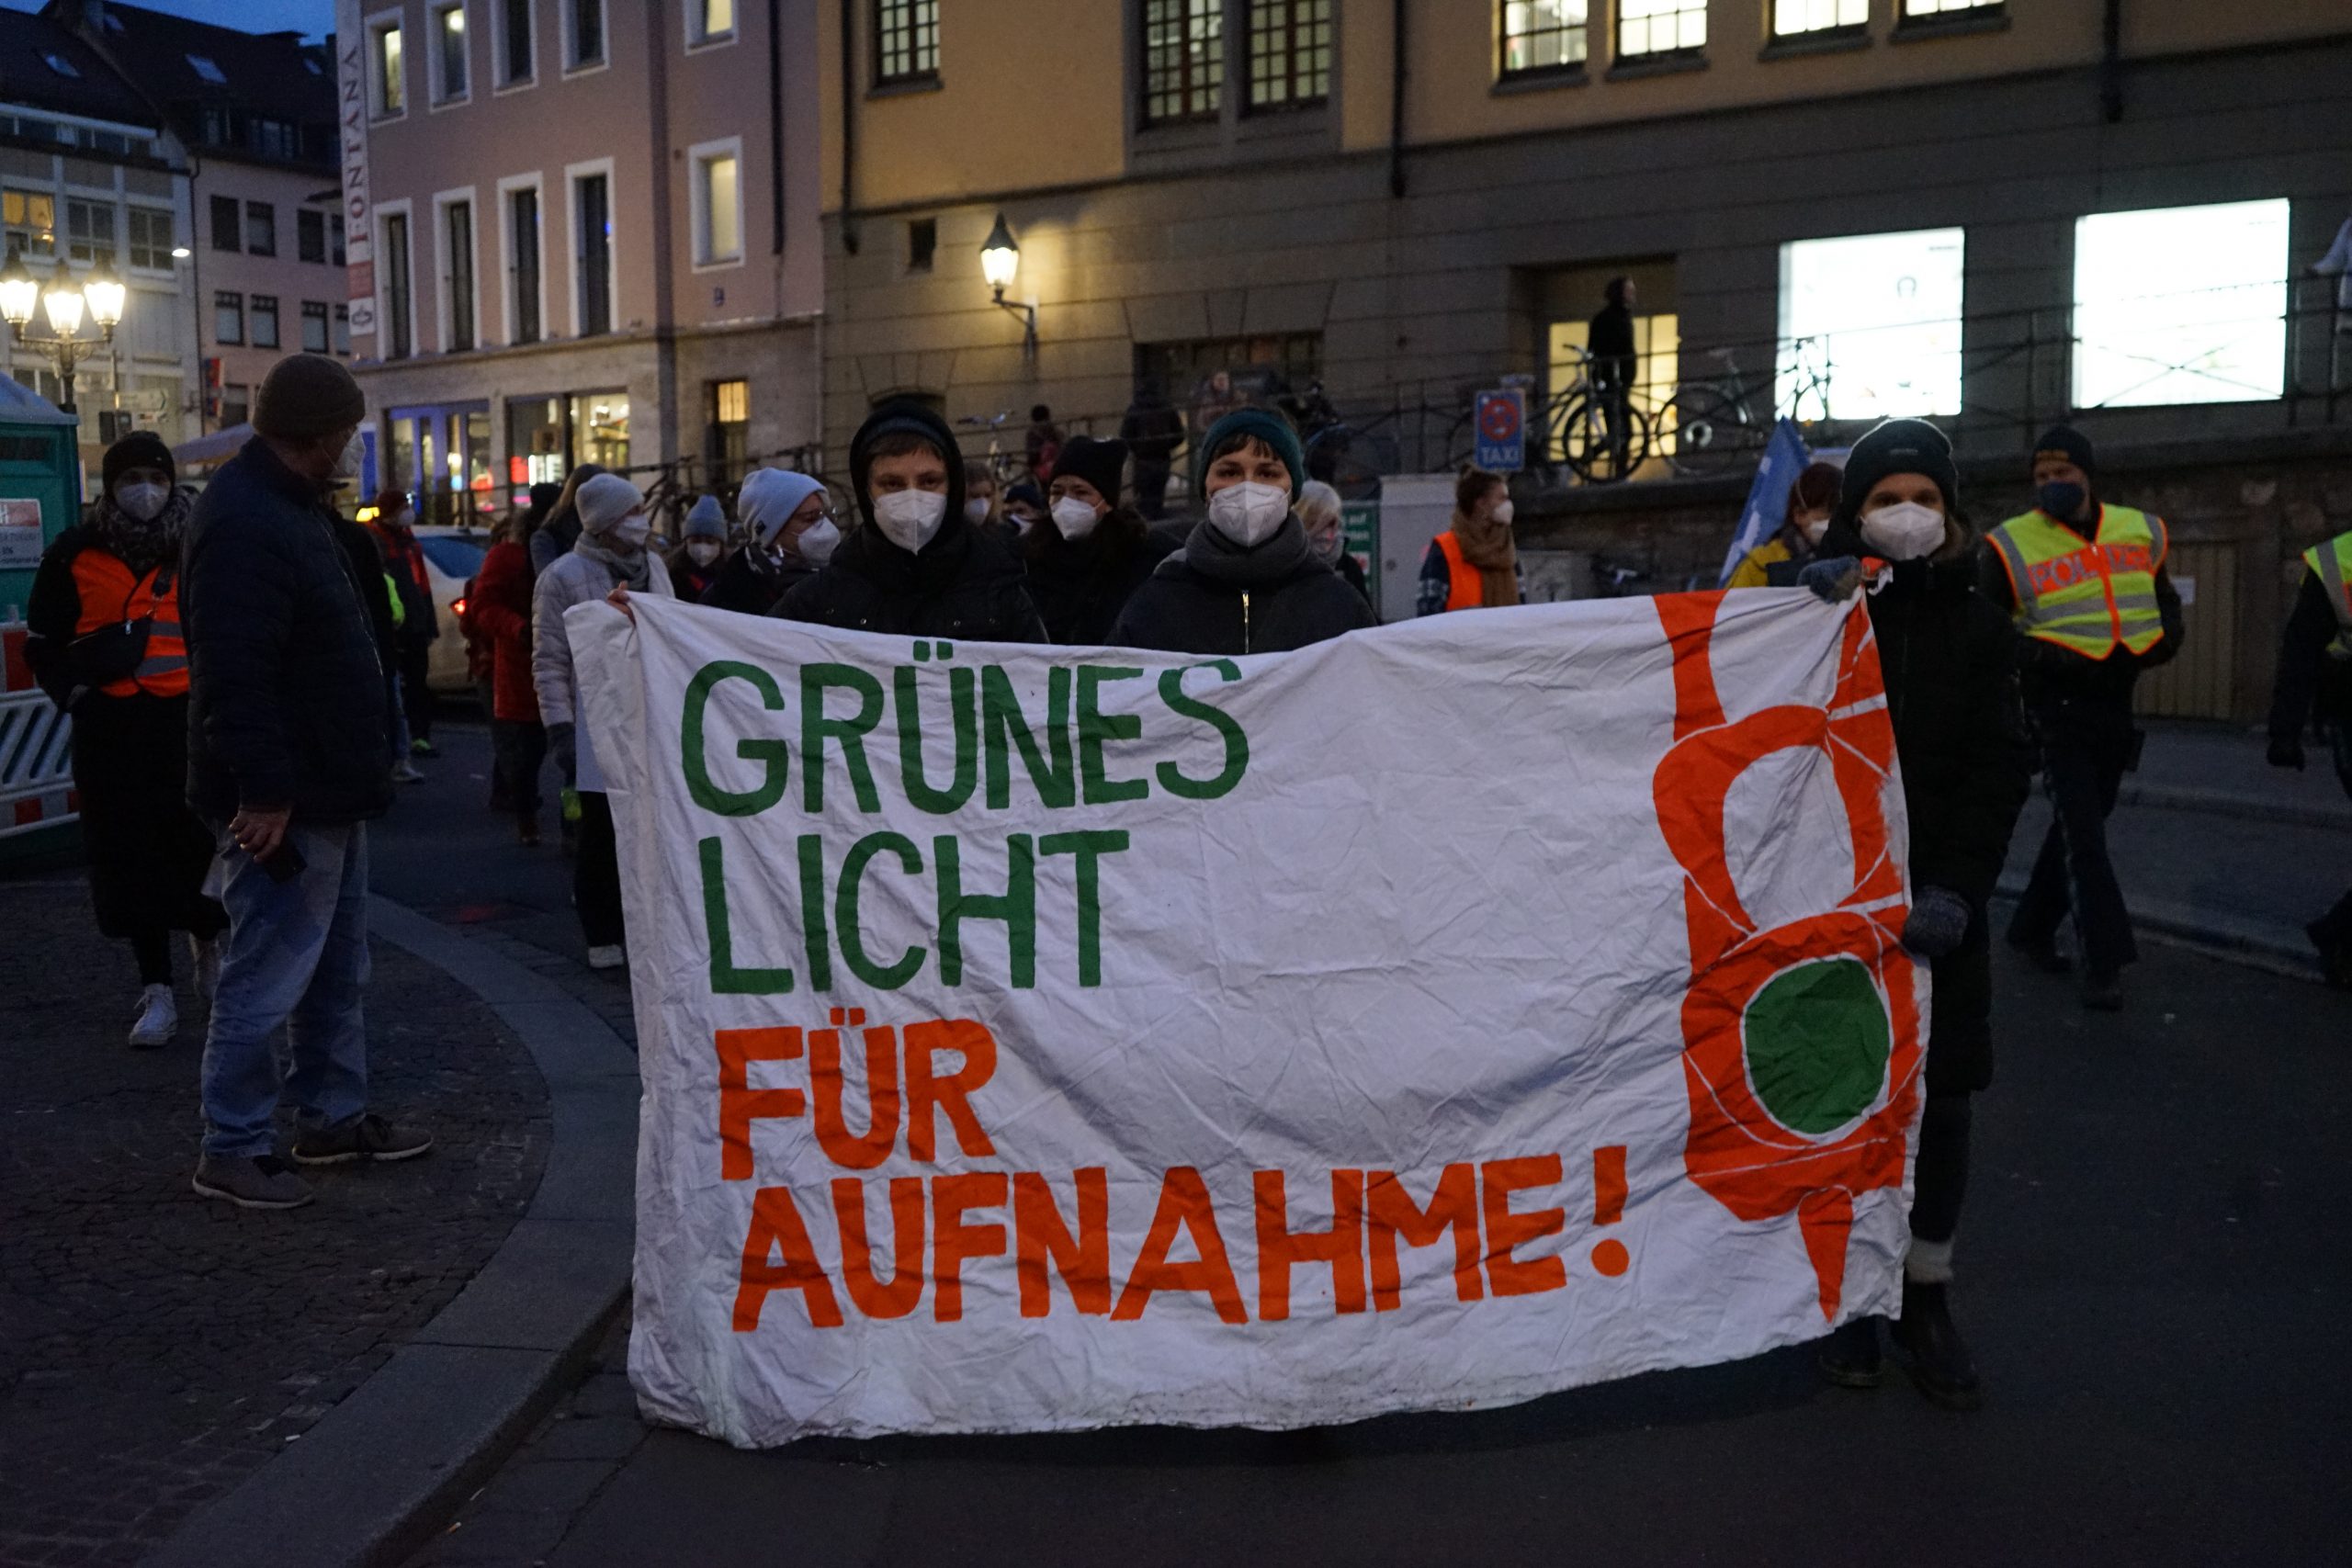 Ein Demonstrationszug, in dem man ein Banner mit der Aufschrift "Grünes Licht für Aufnahme!" sehen kann.